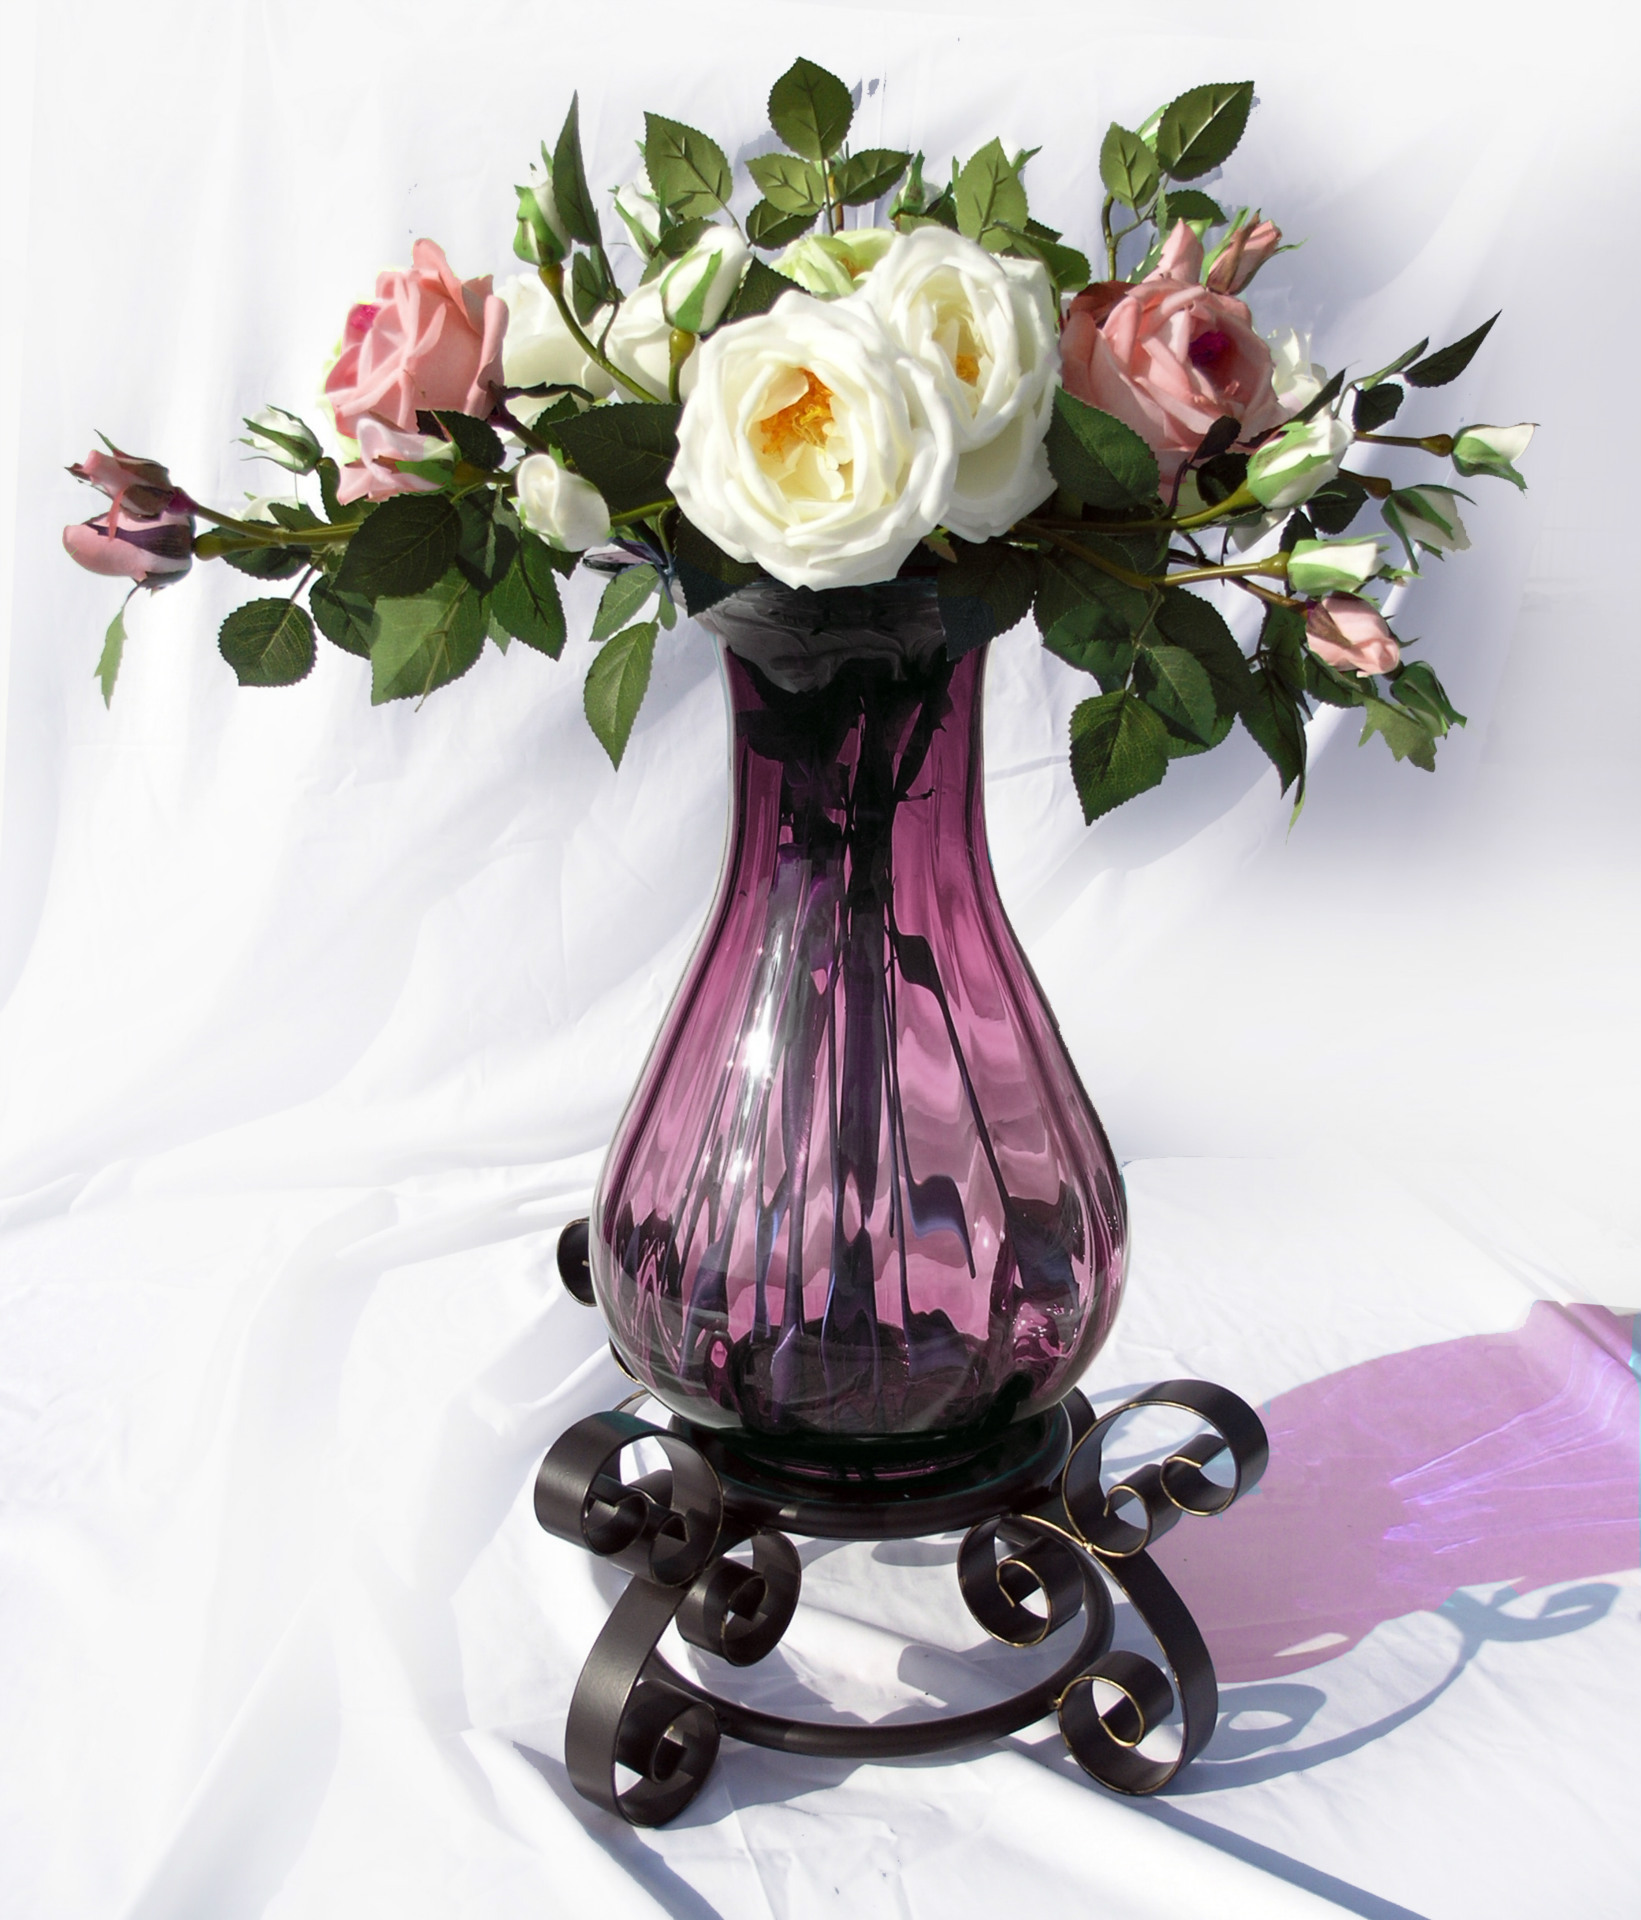 现货热销 美式透明水晶玻璃花瓶 新古典新装饰主义花插玻璃花瓶